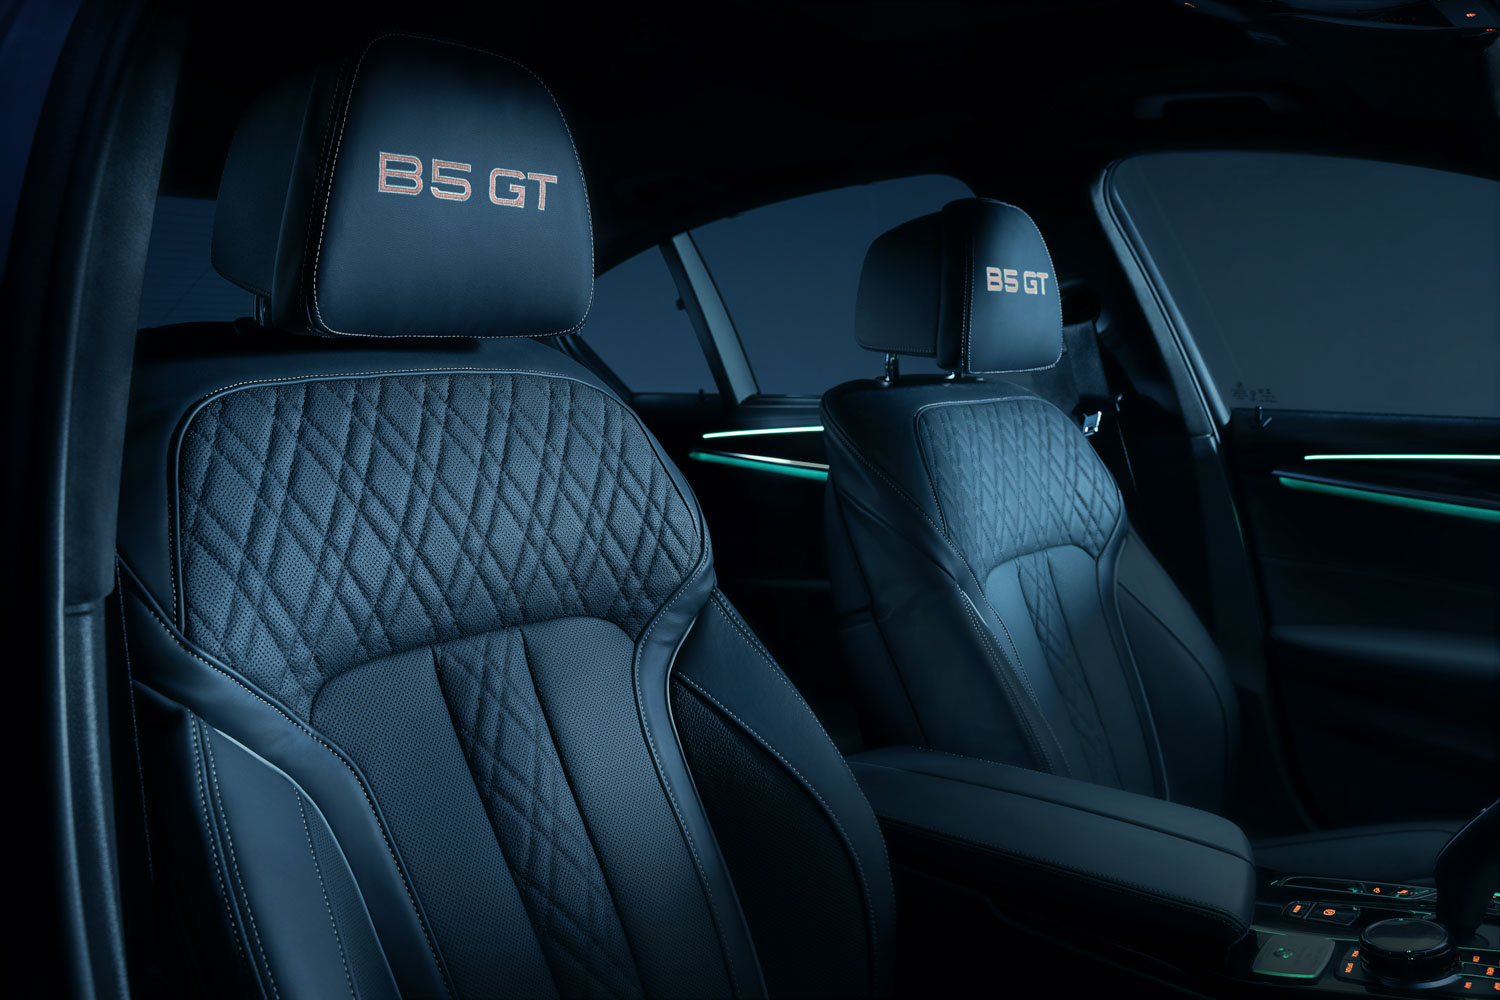 BMWアルピナ B5 GTの内装